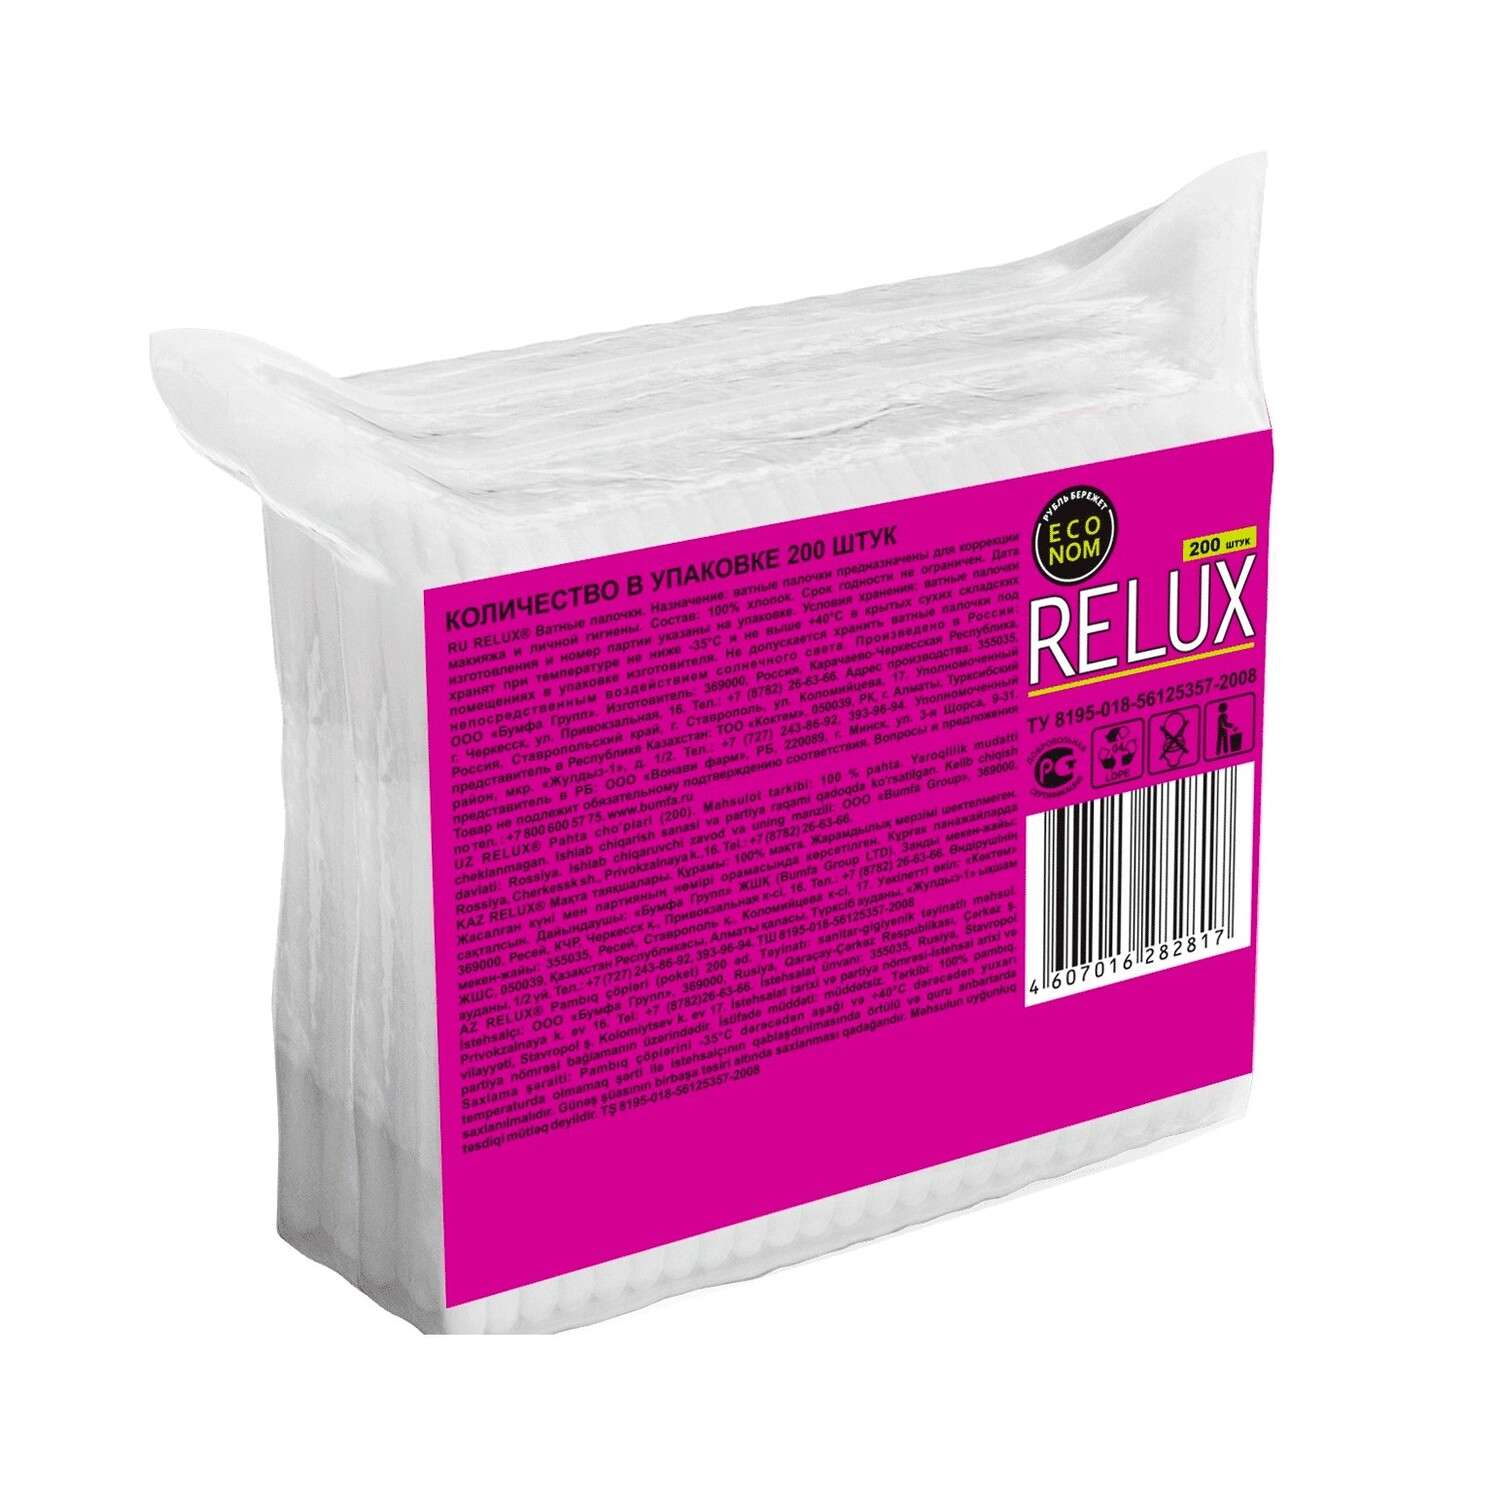 Ватные палочки Relux 200шт (пакет) - фото 2